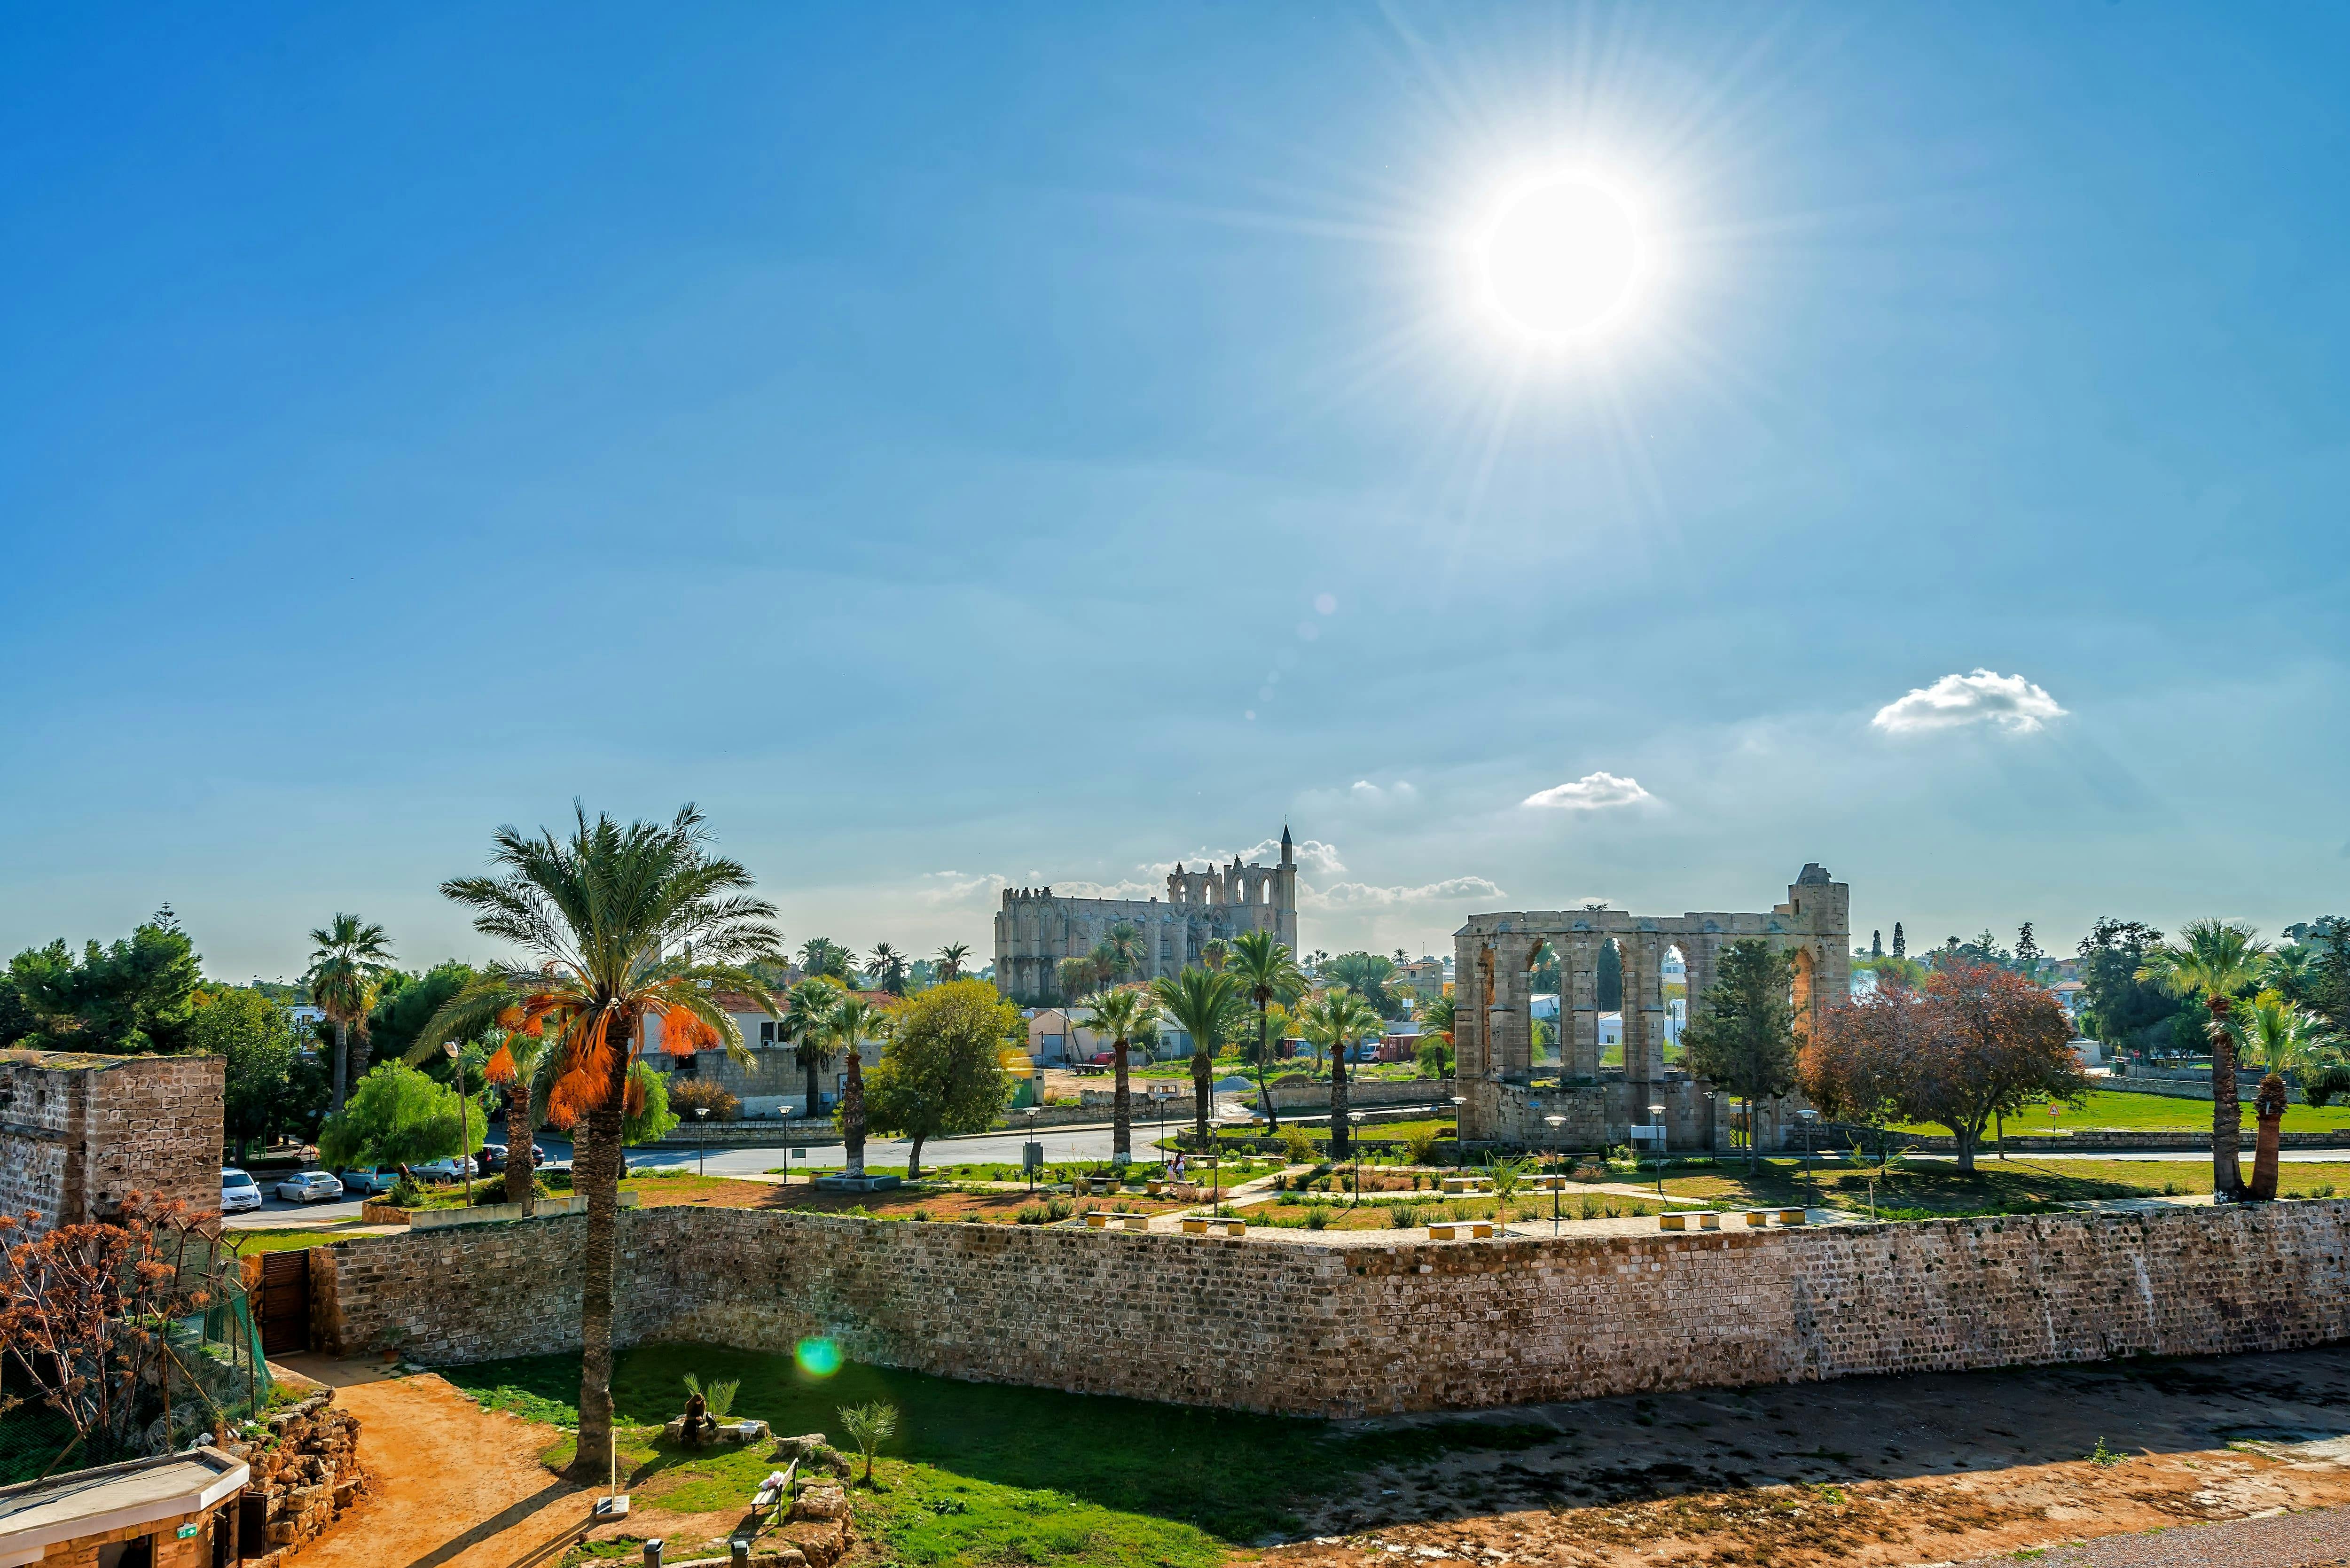 Visita a la ciudad de Famagusta con Salamina y la "ciudad fantasma" de Varosha